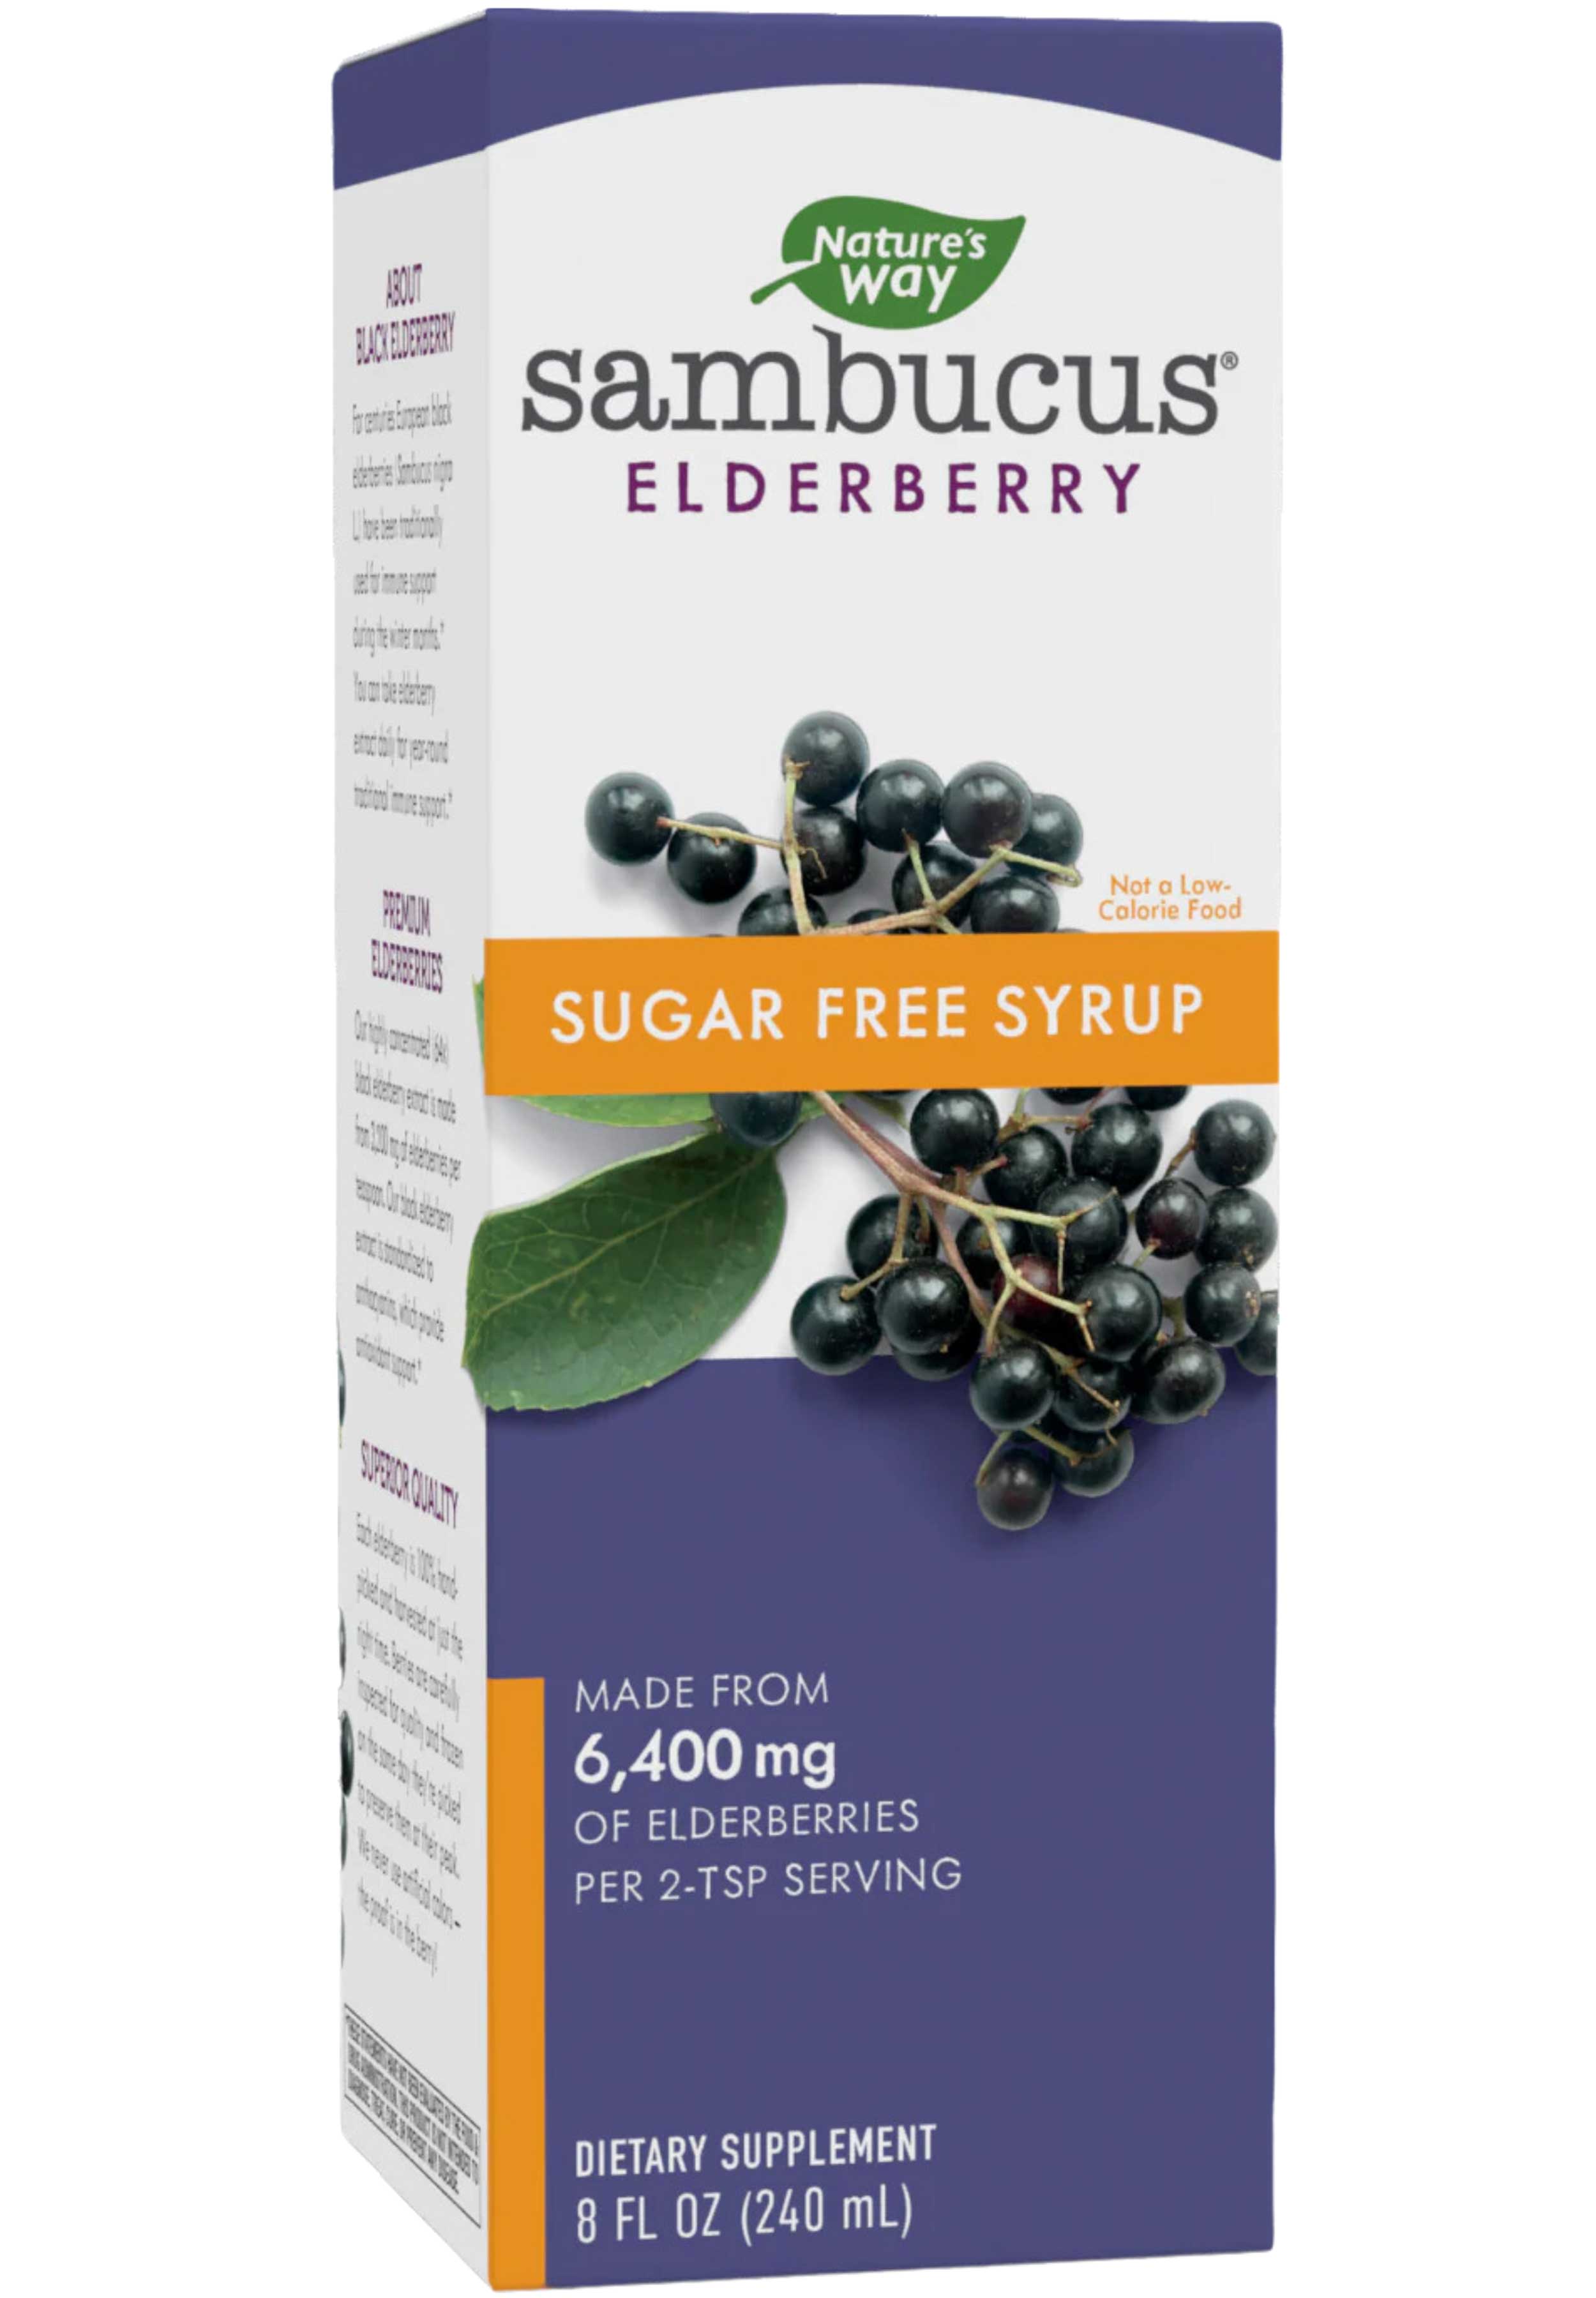 Nature's Way Sambucus Sugar Free Syrup